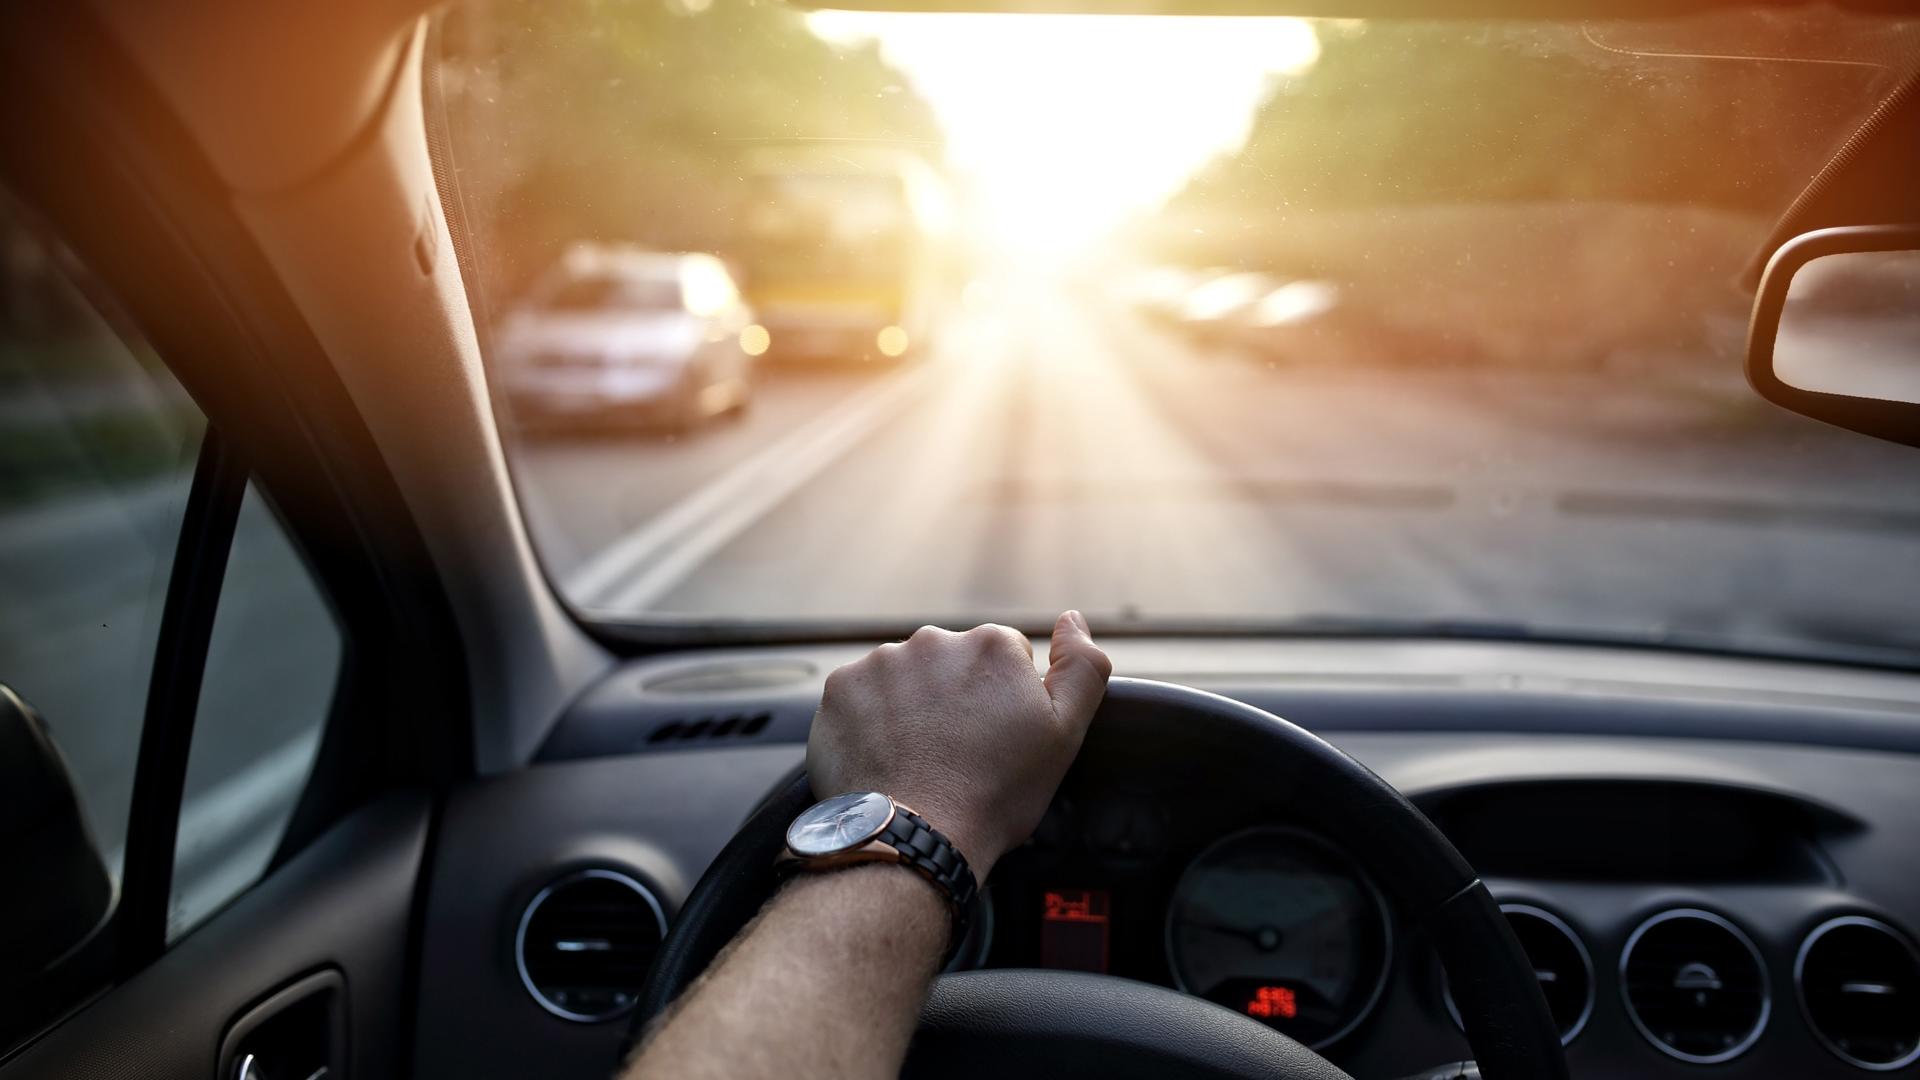 Bepaalde tinten kunnen bijzonder aangenaam zijn voor het autorijden.   Bruine of grijze tinten helpen om lichtsignalen zoals verkeerslichten of remlichten binnen milliseconden te identificeren, waardoor de reactietijd direct verbeterd wordt.